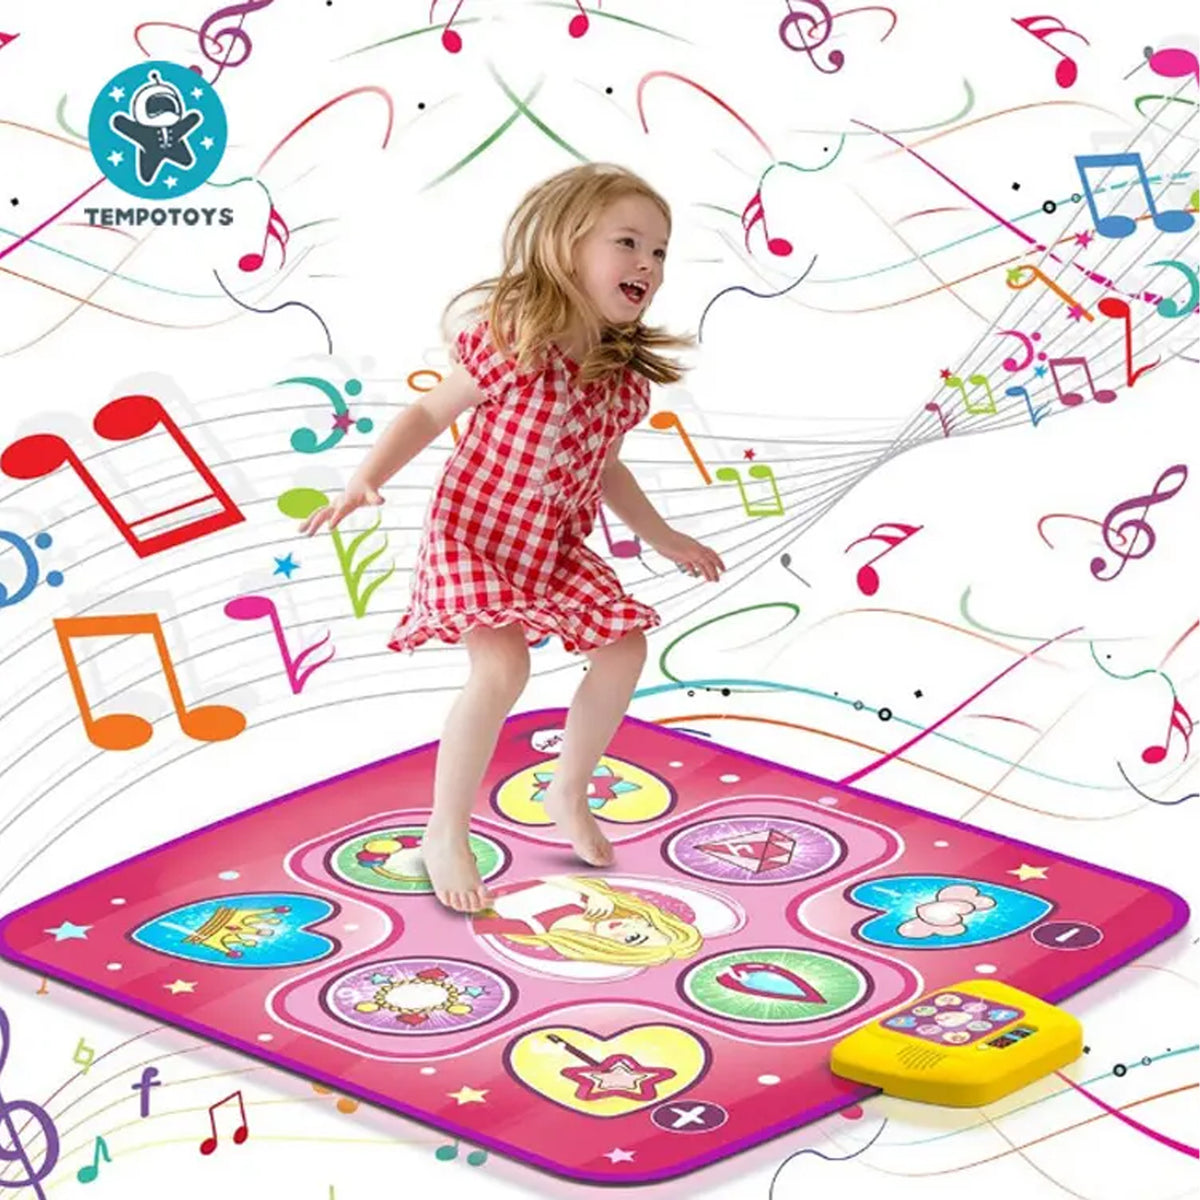 Dancing Playmat for Kids